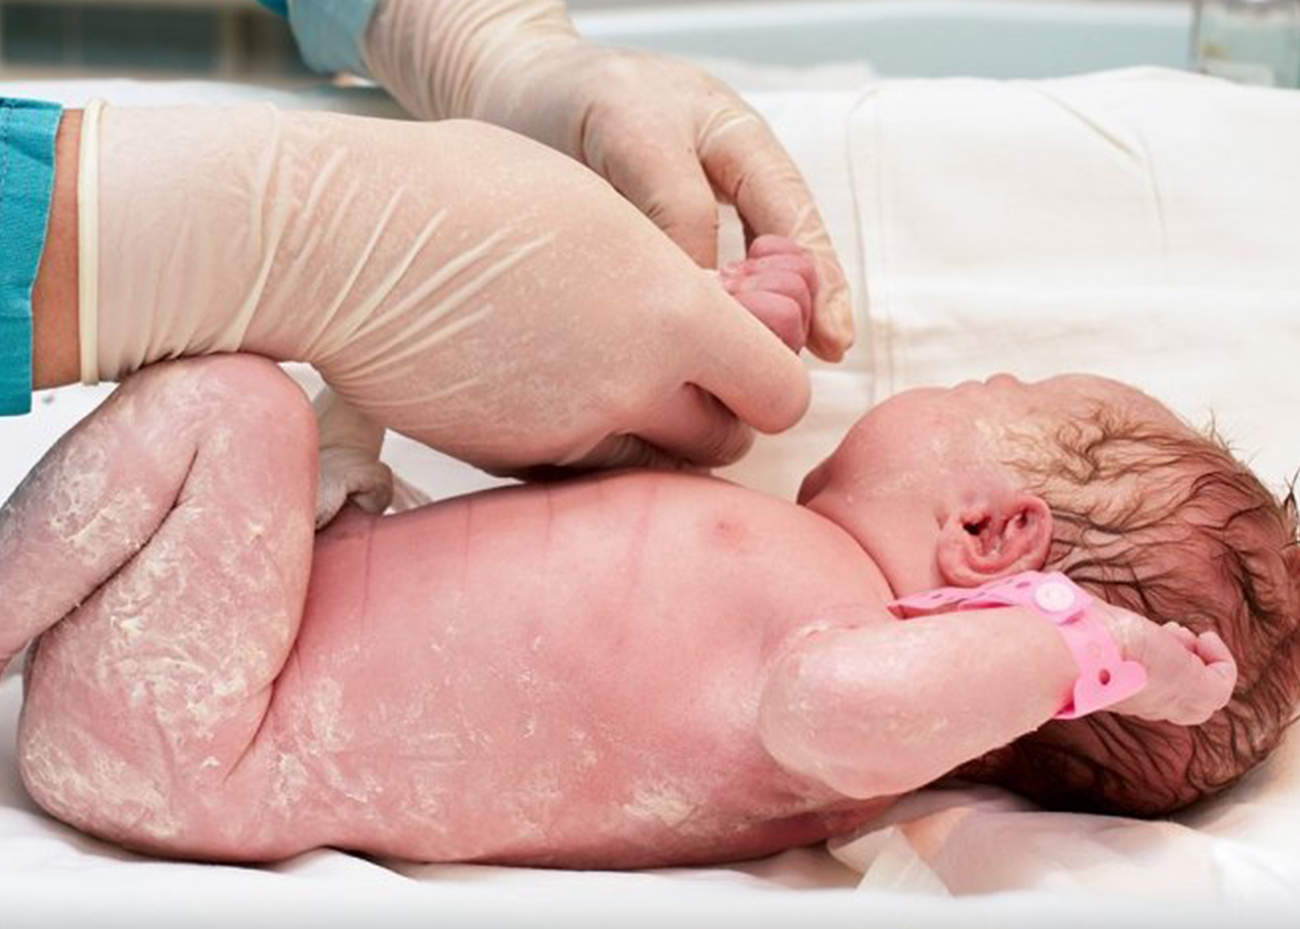 Cómo cuidar de la piel del recién nacido